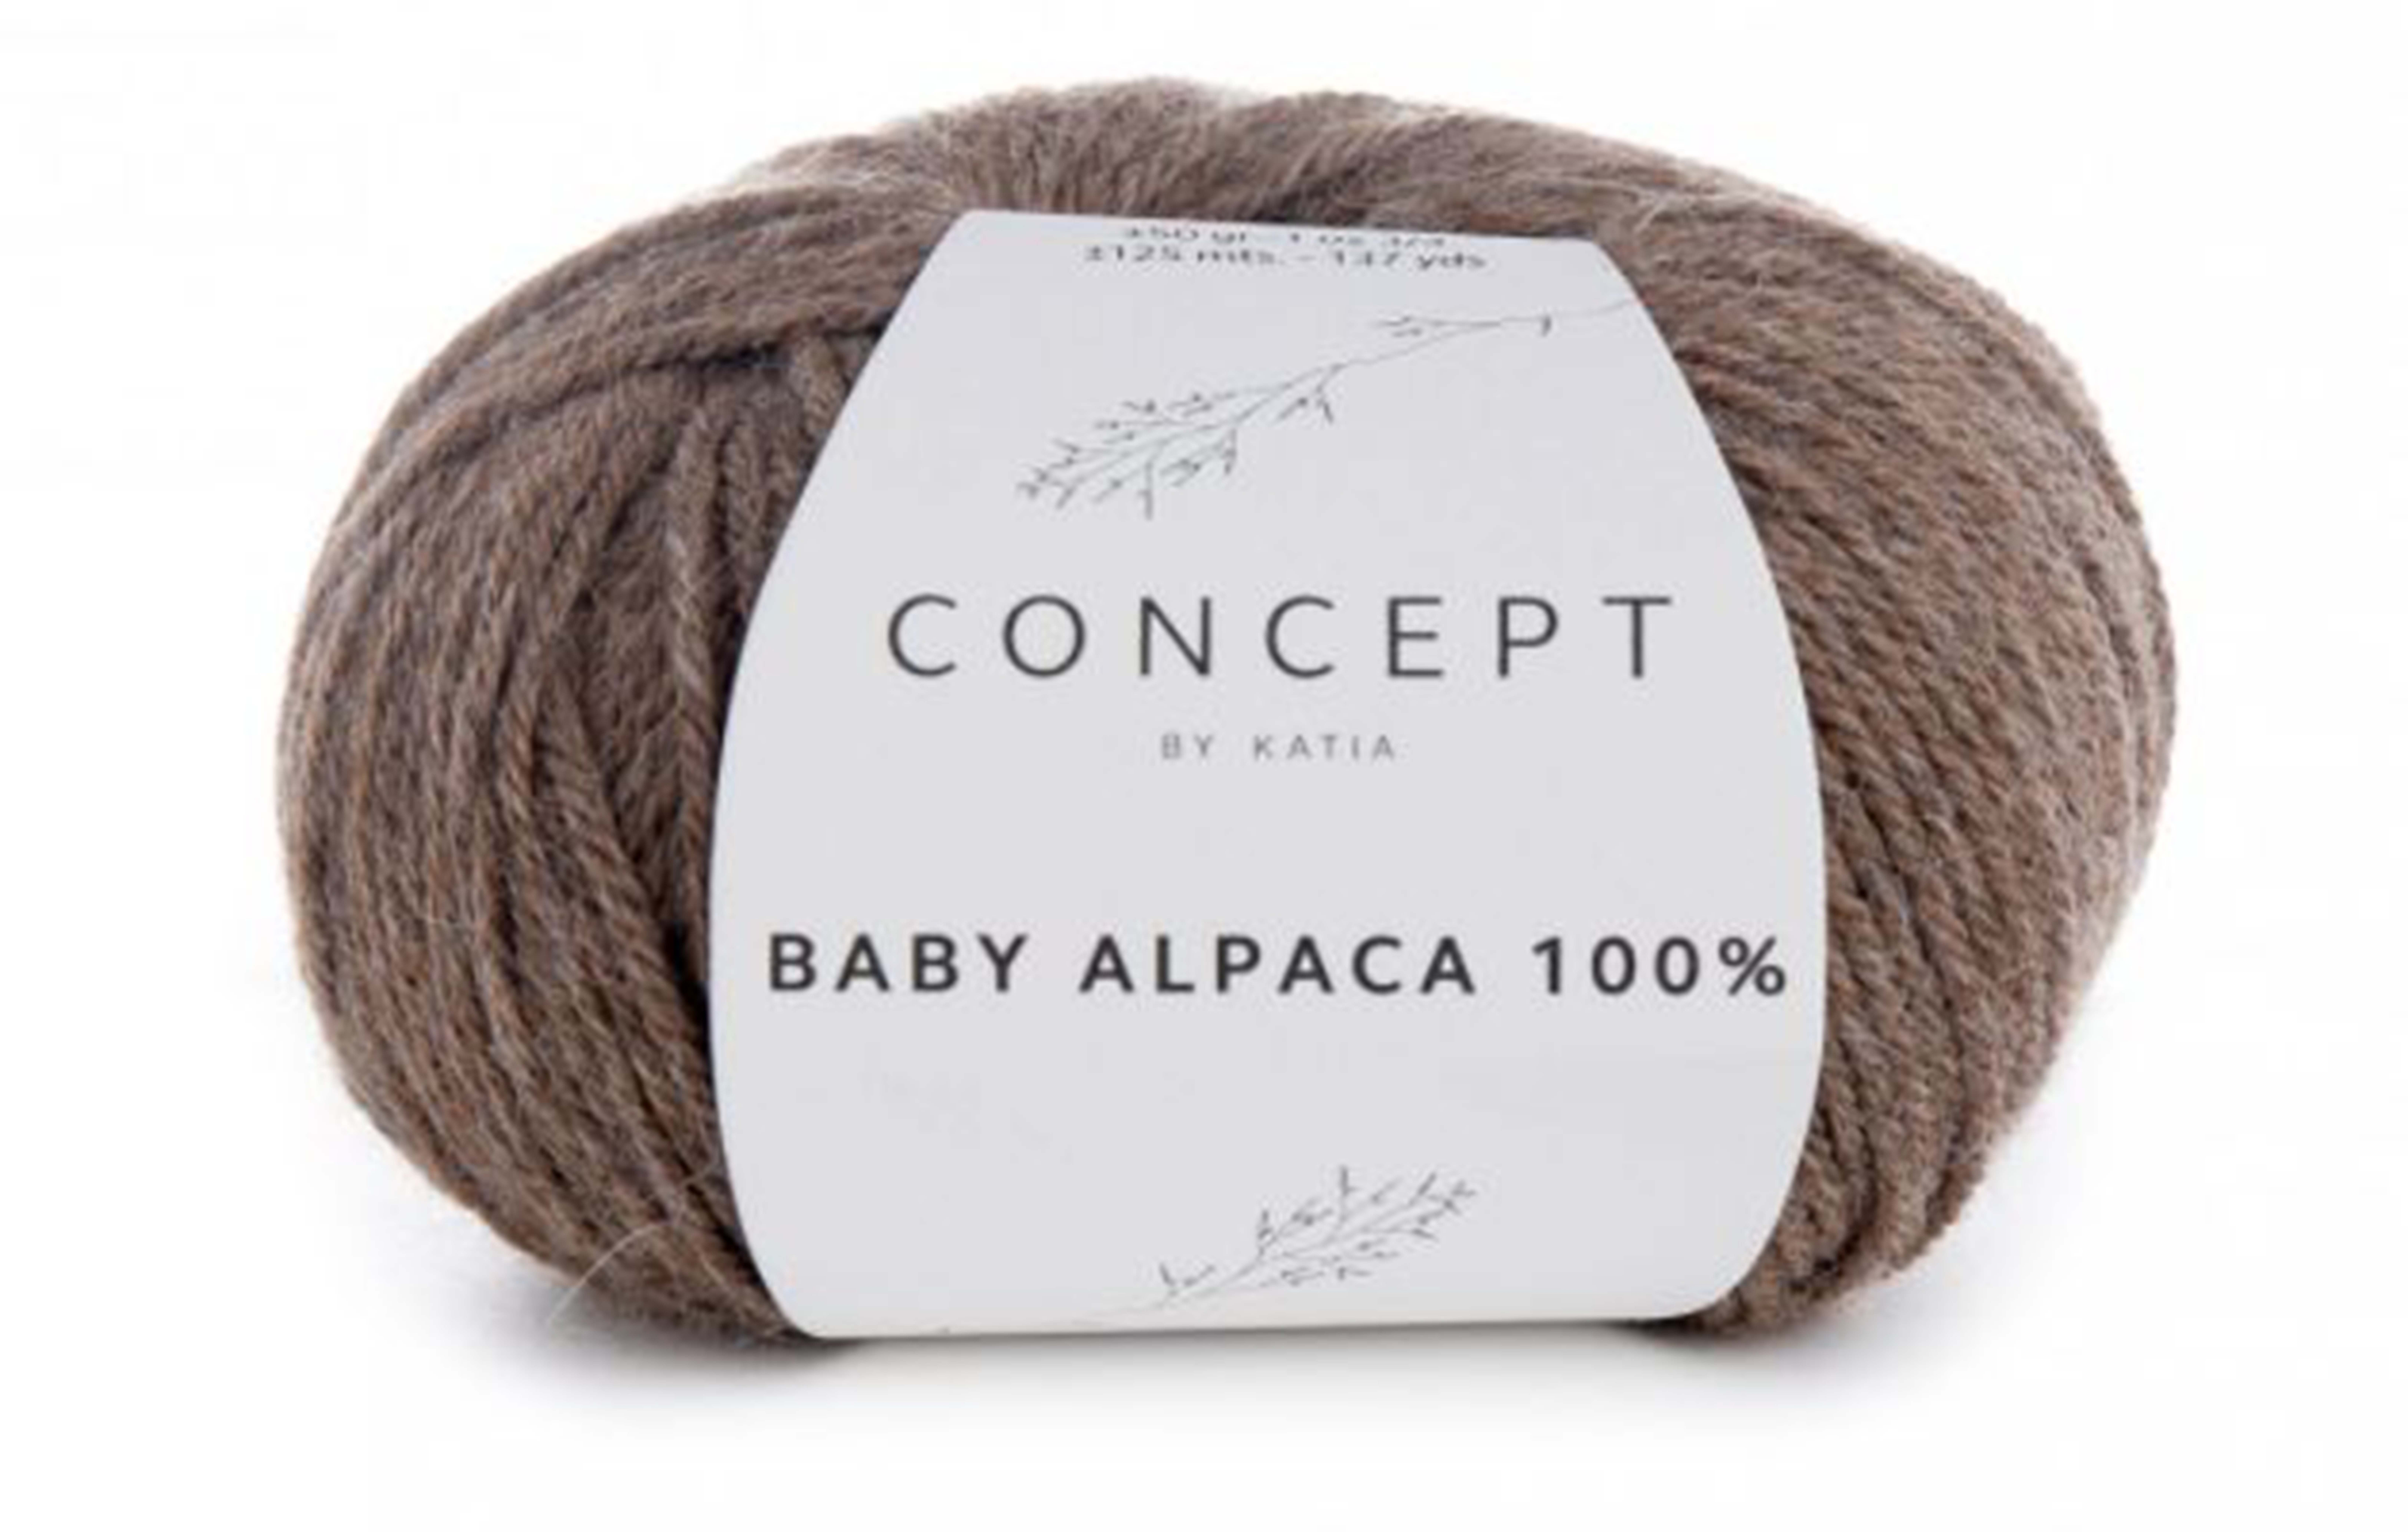 Baby Alpaca, Concept by Katia